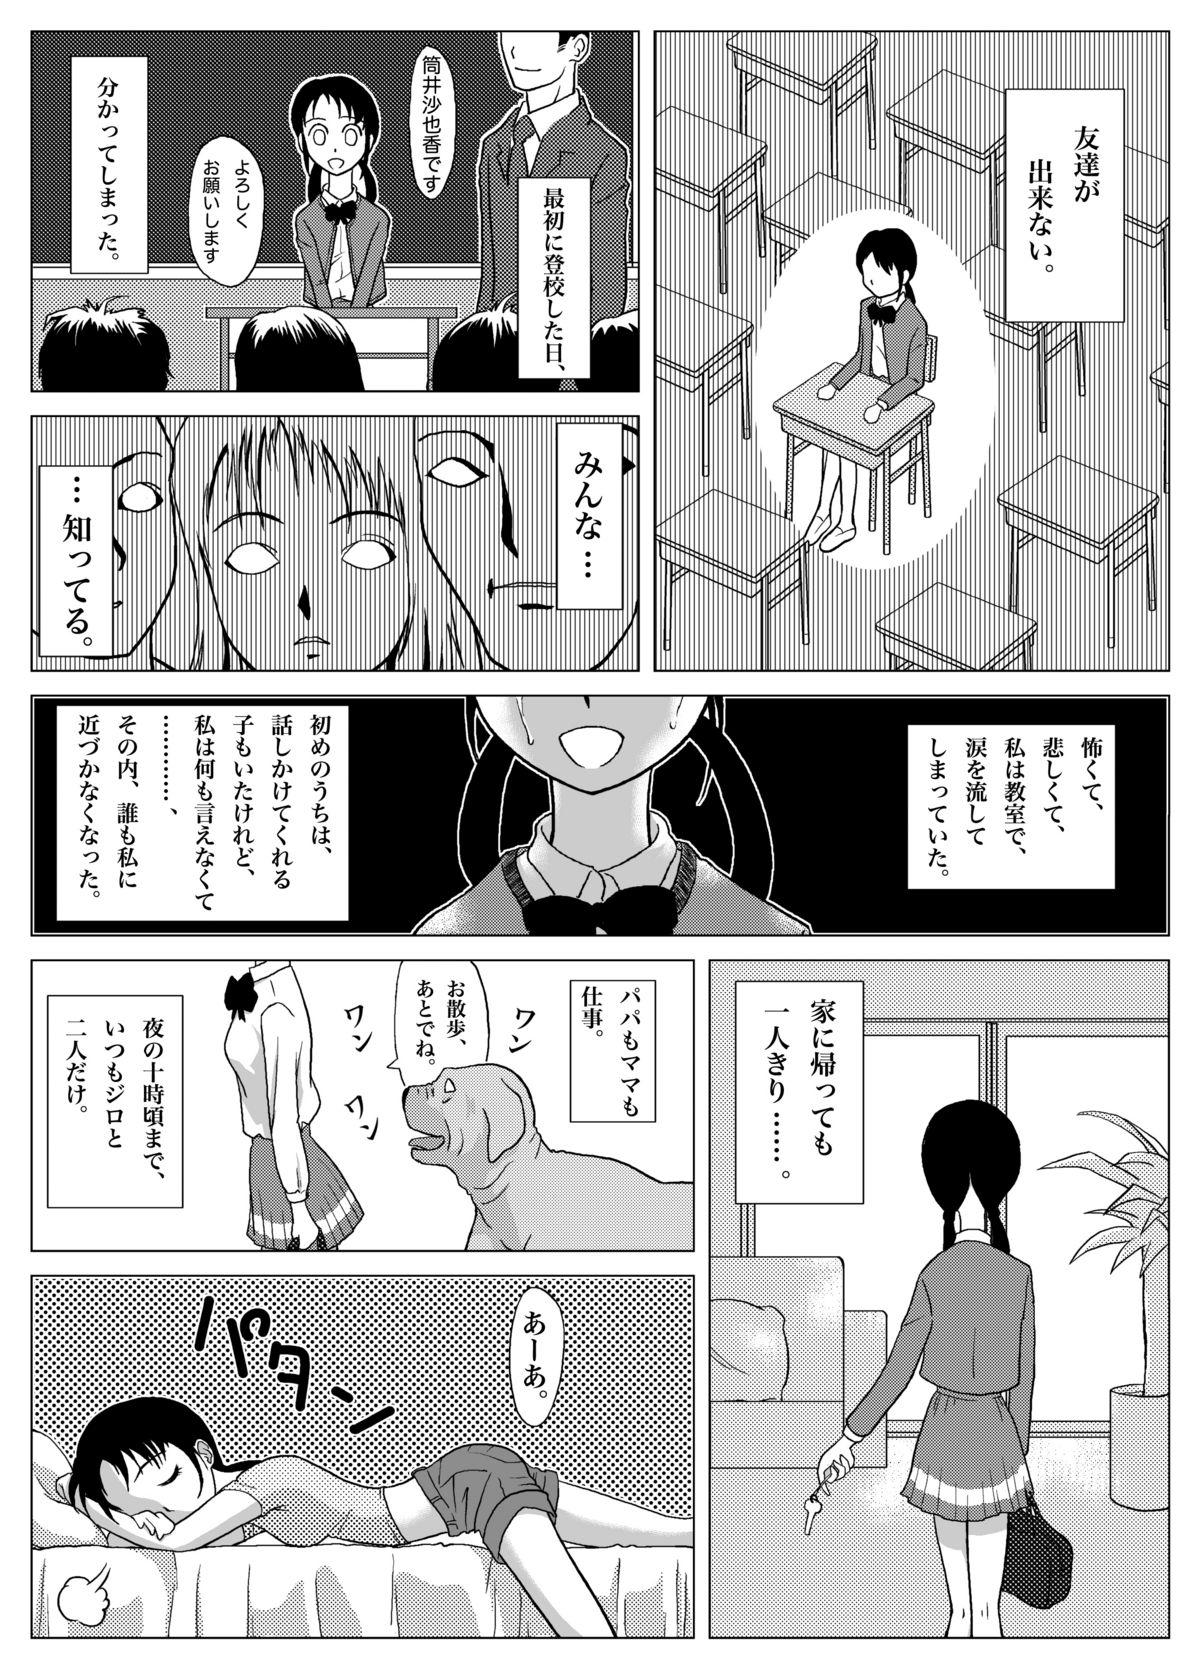 Show Yappari Inu ga Suki Doggy Style - Page 6